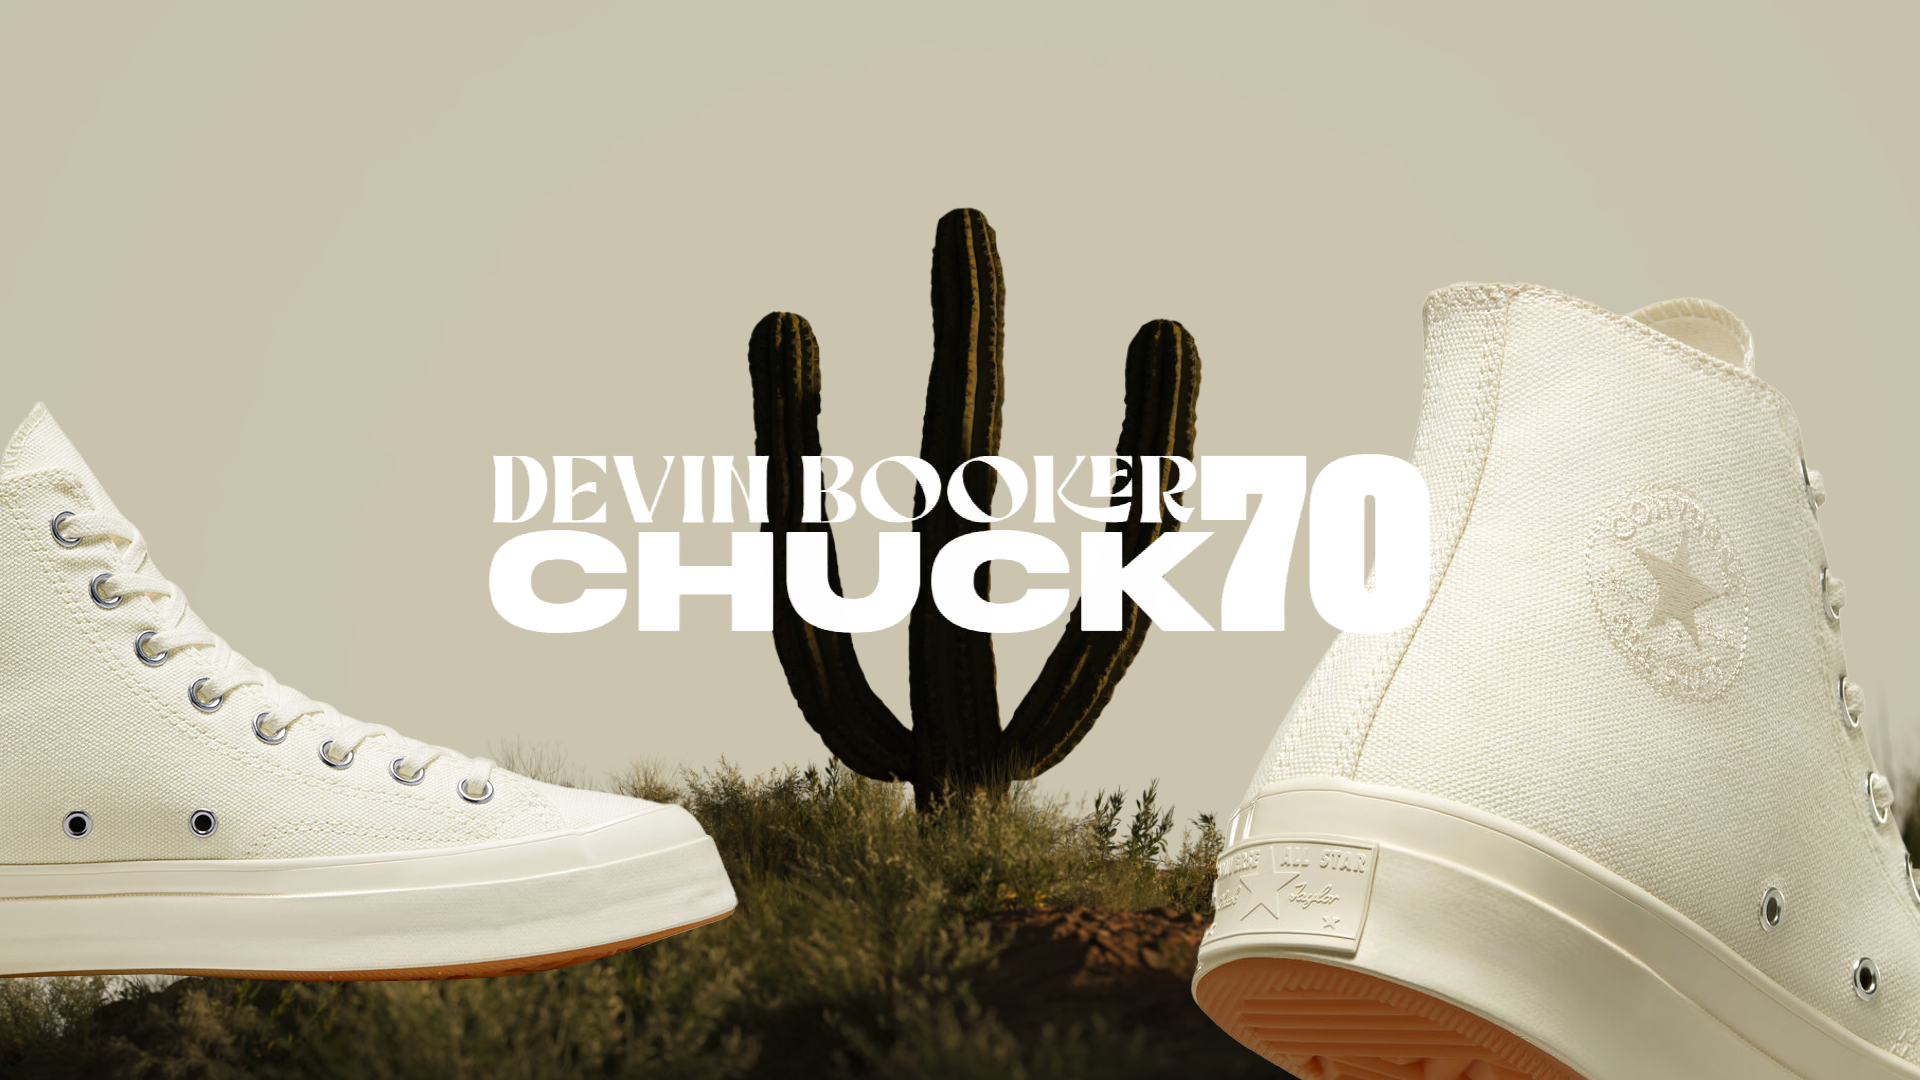 Converse / Devin Booker Chuck 70